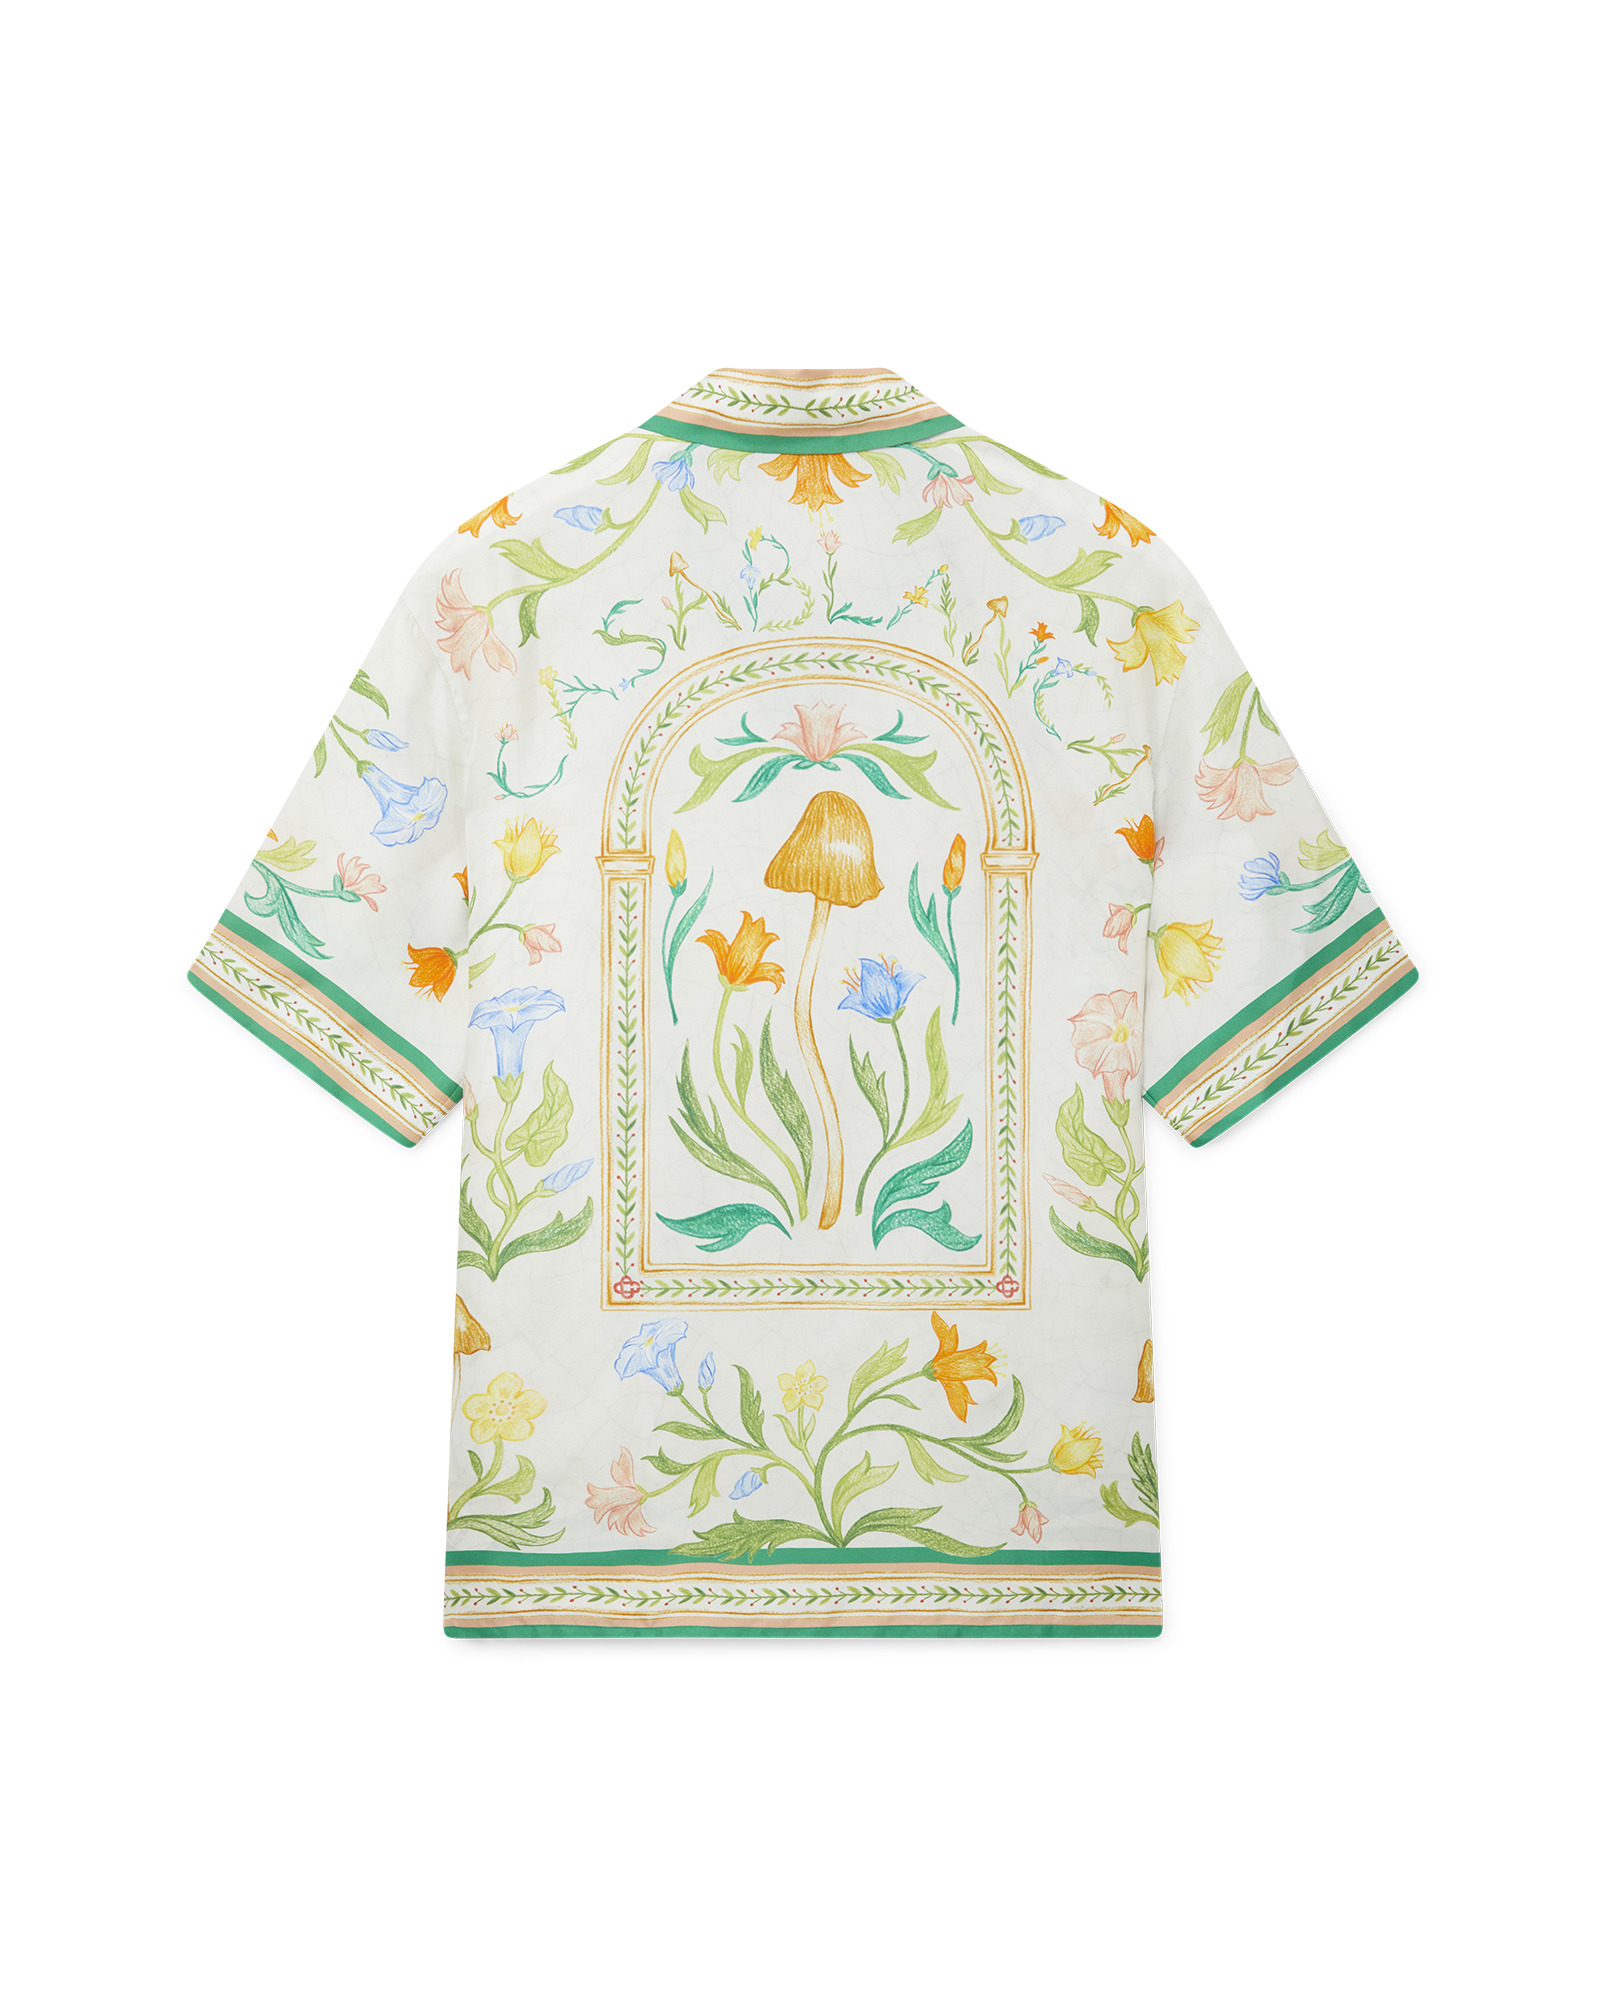 L'Arche Fleurie Silk Shirt - 2